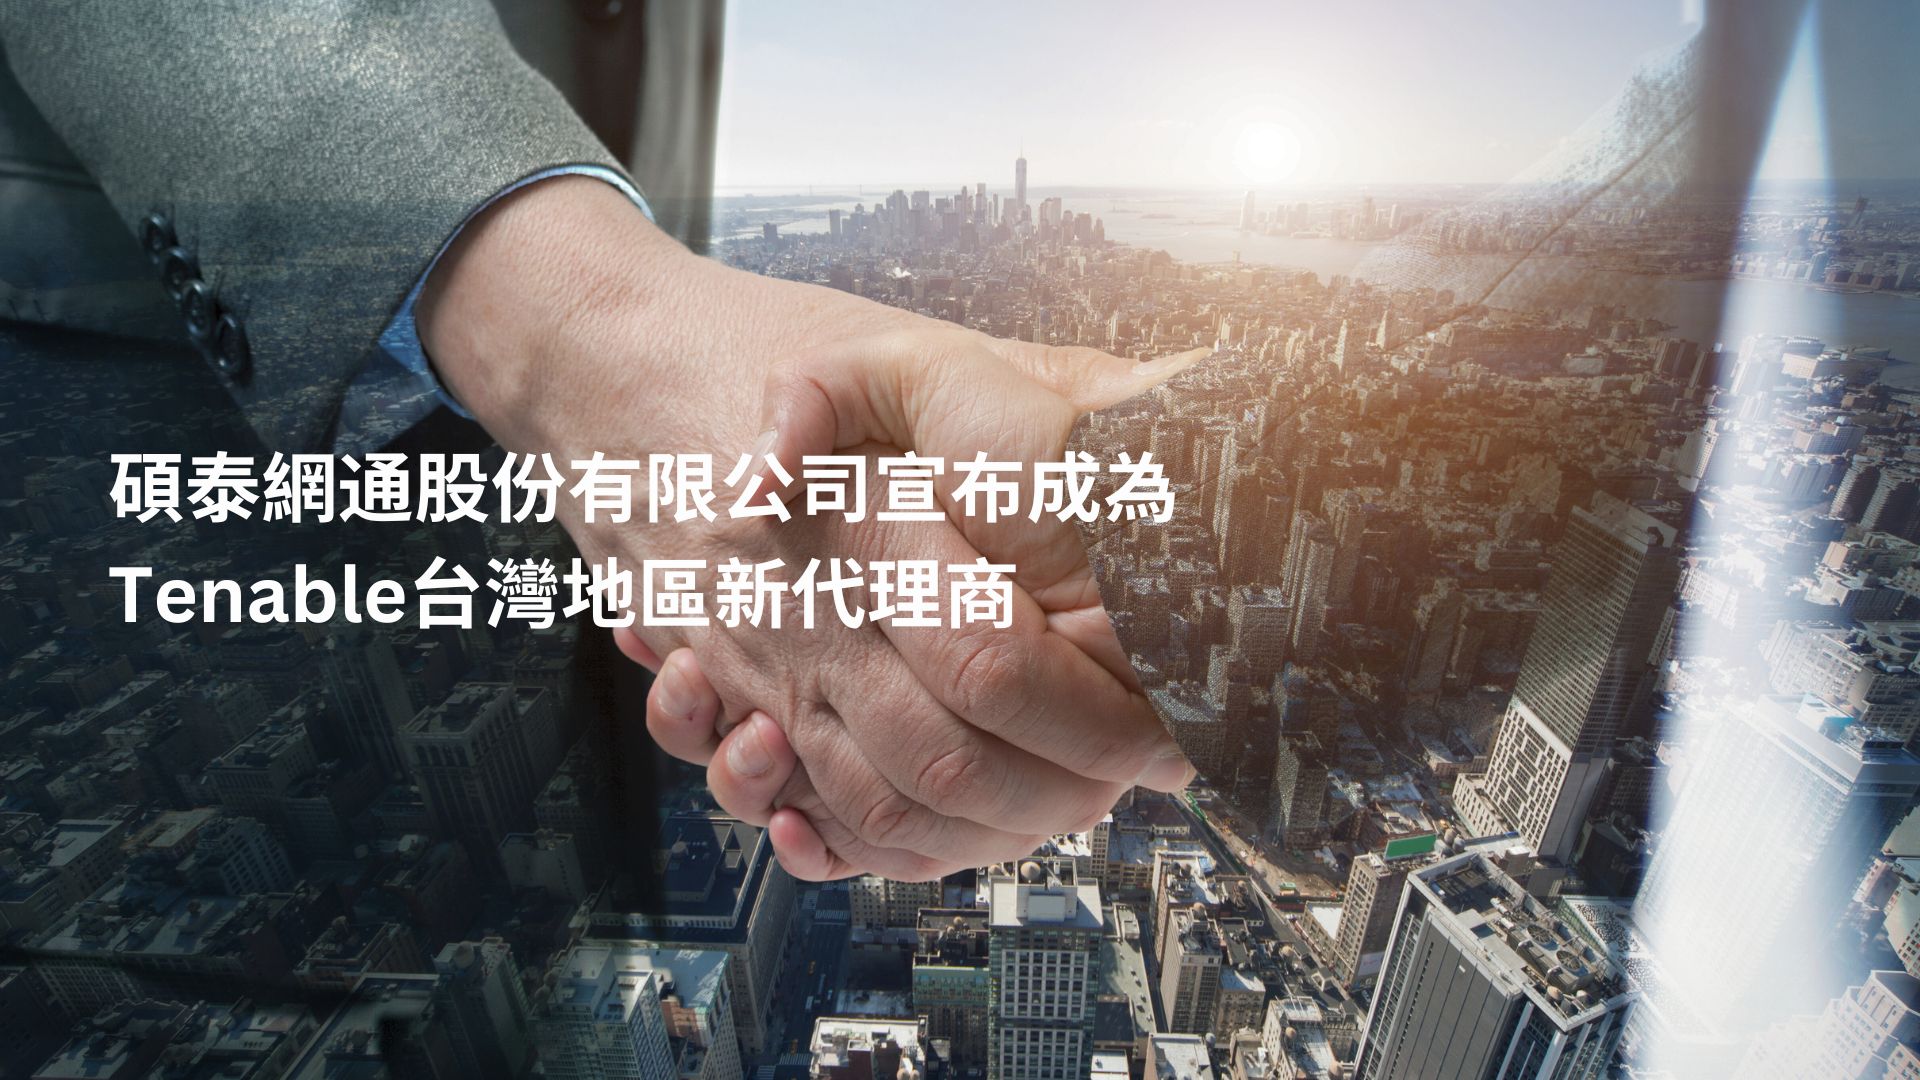 碩泰網通宣布取得Tenable台灣區代理權